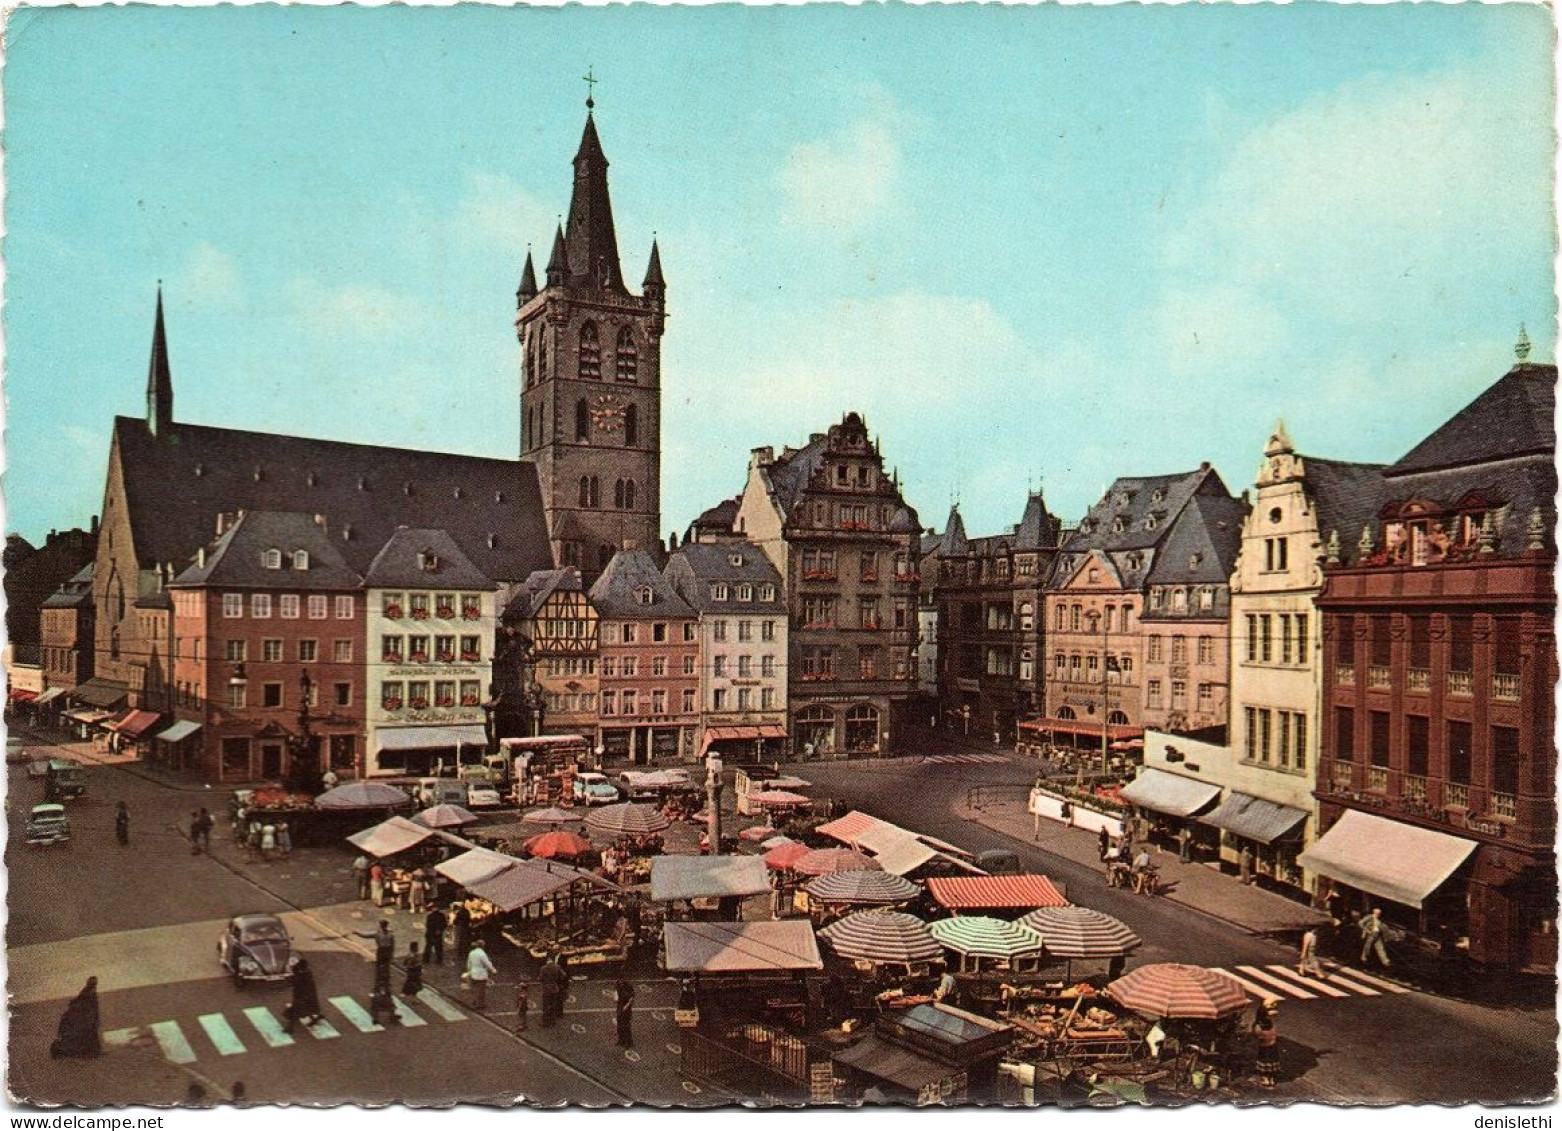 TRIER - Hauptmarkt Und St. Gangolt - Trier